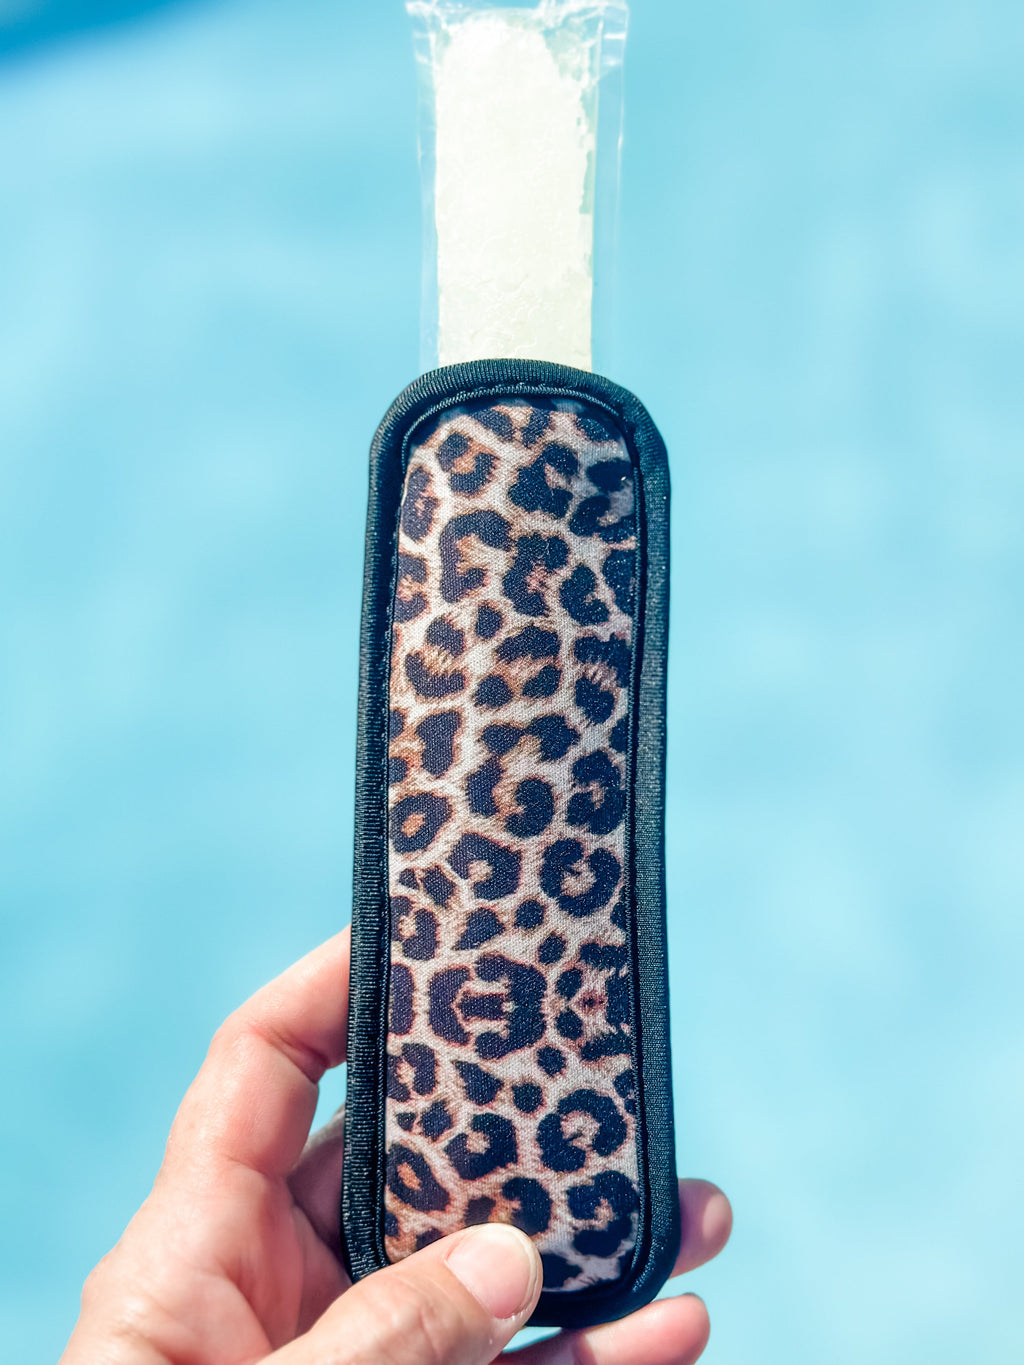 Neoprene Popsicle Holder "Cheetah"